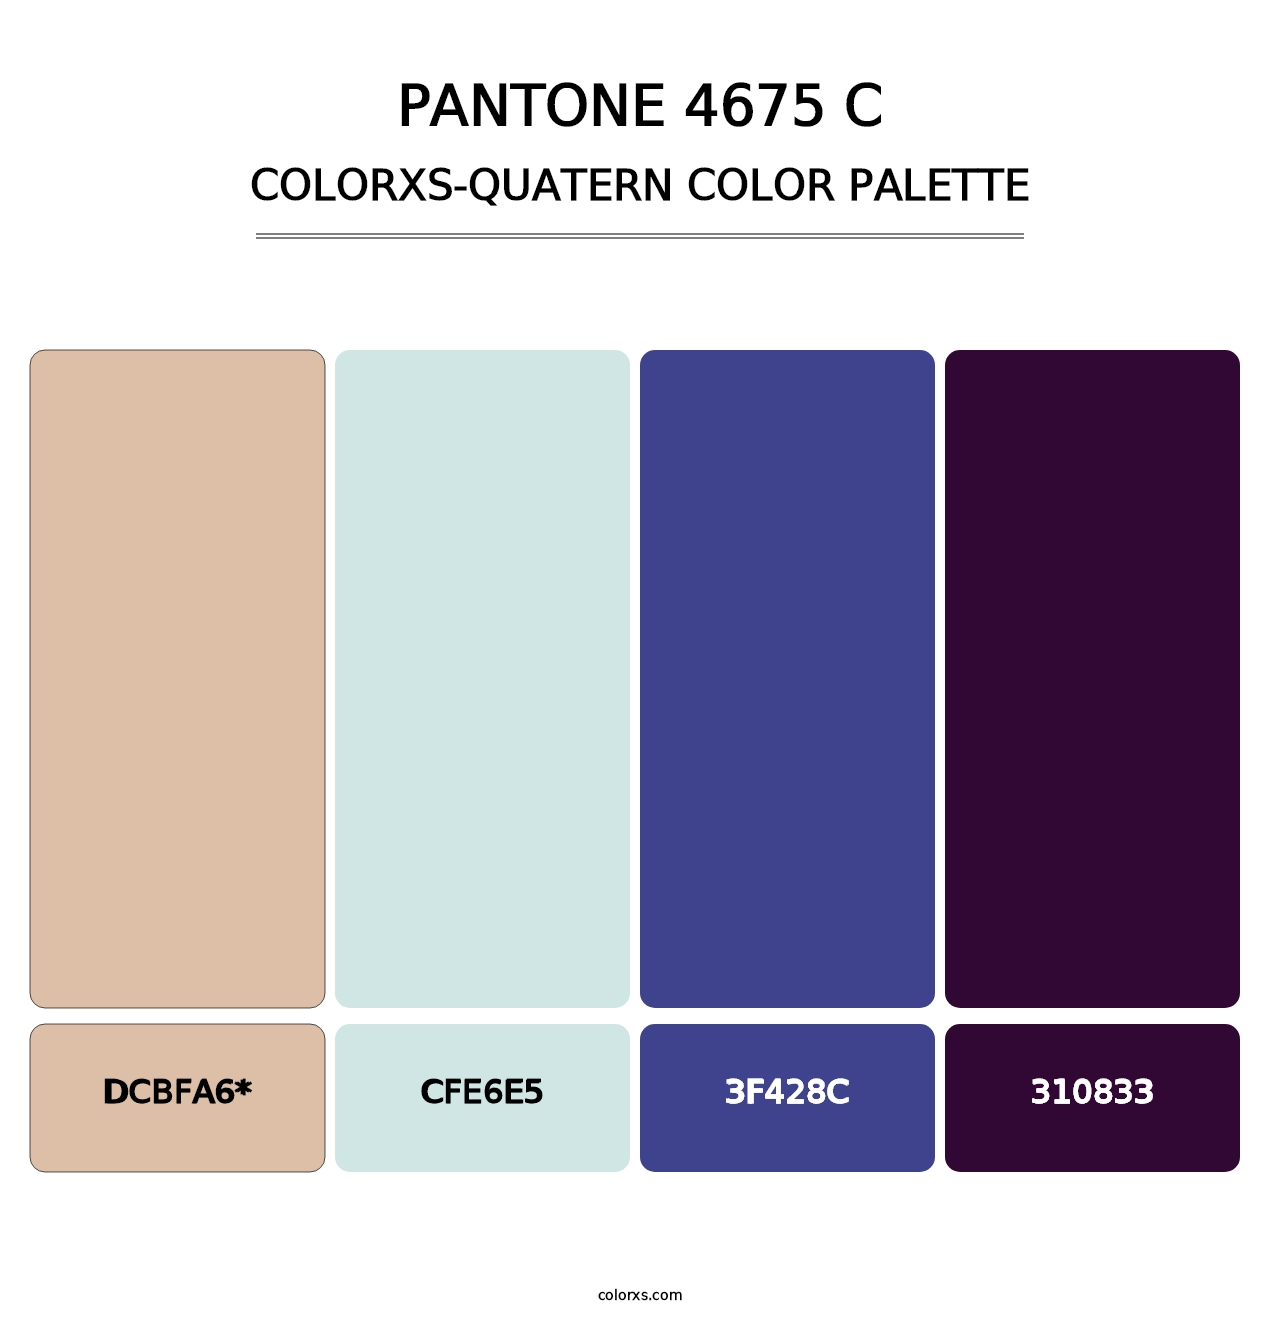 PANTONE 4675 C - Colorxs Quatern Palette